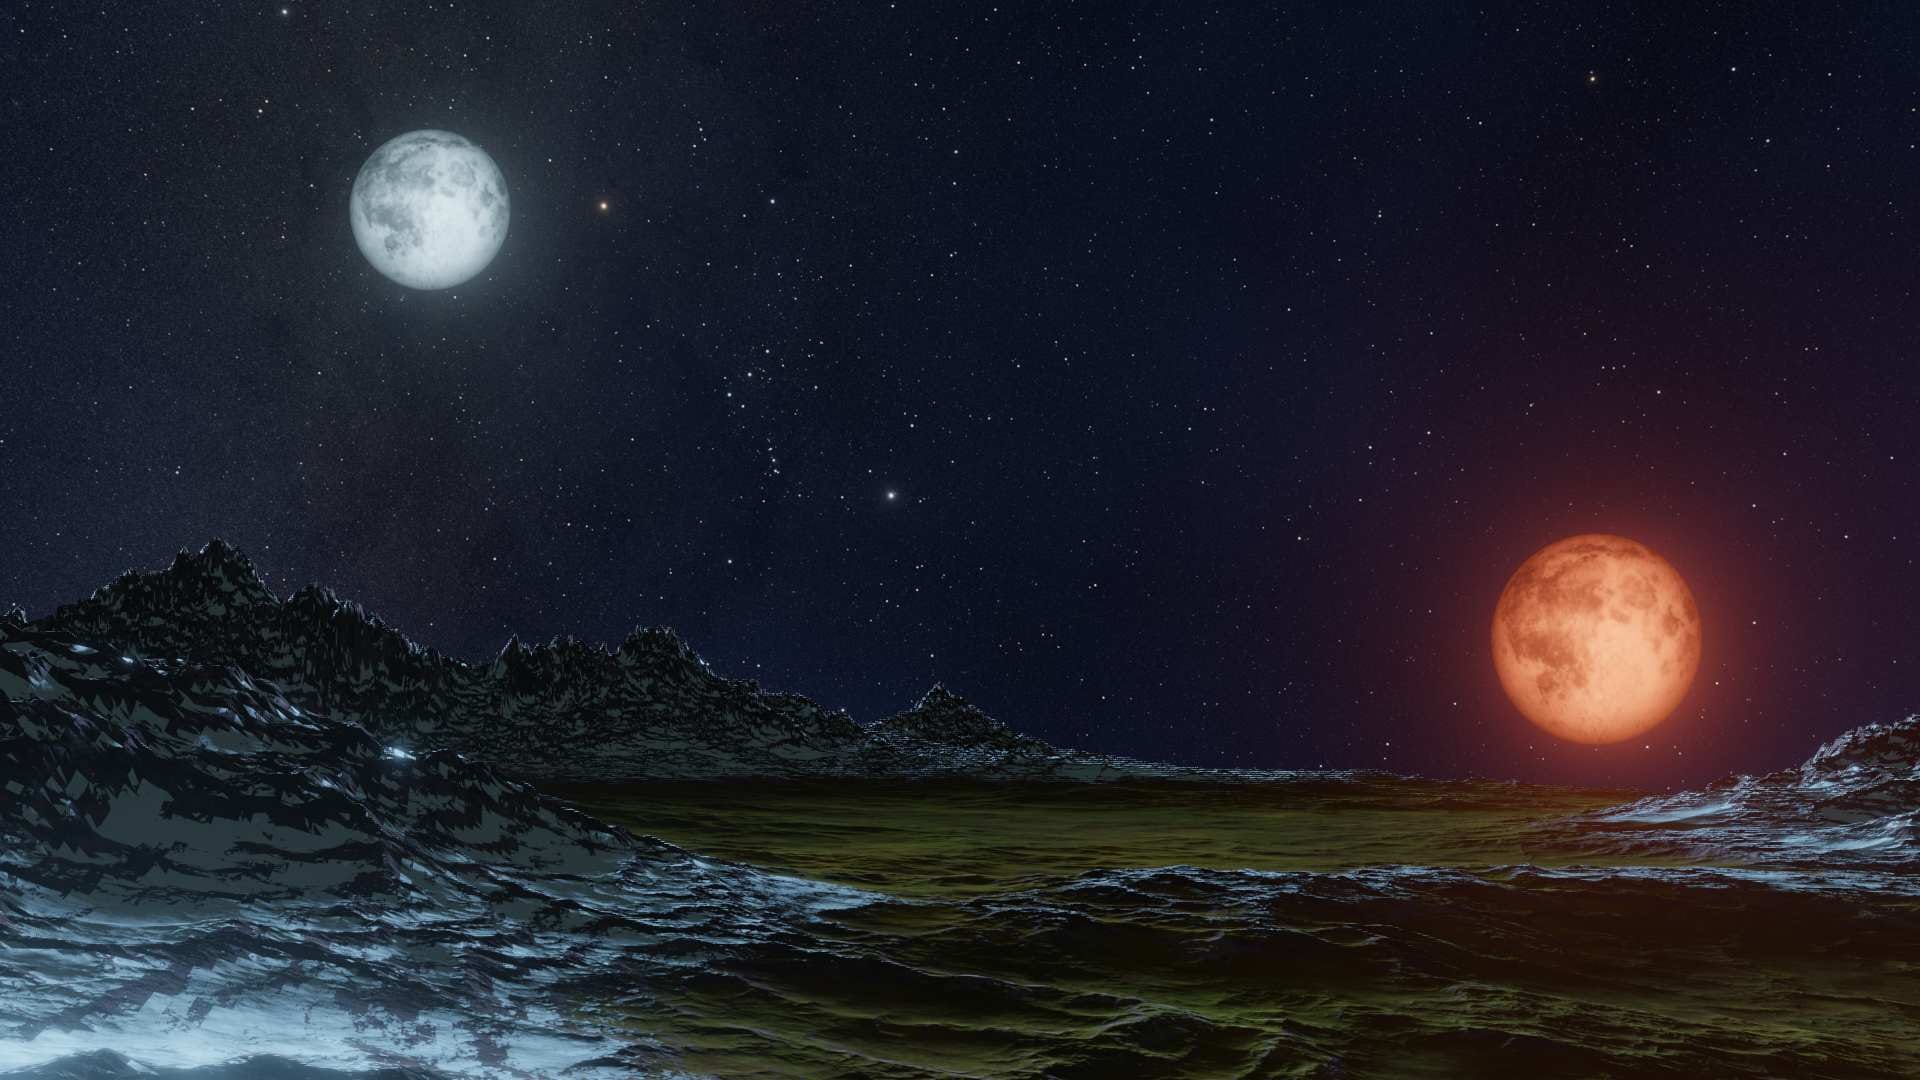 L’Illusione Lunare: Perché La Luna Appare Così Grande?